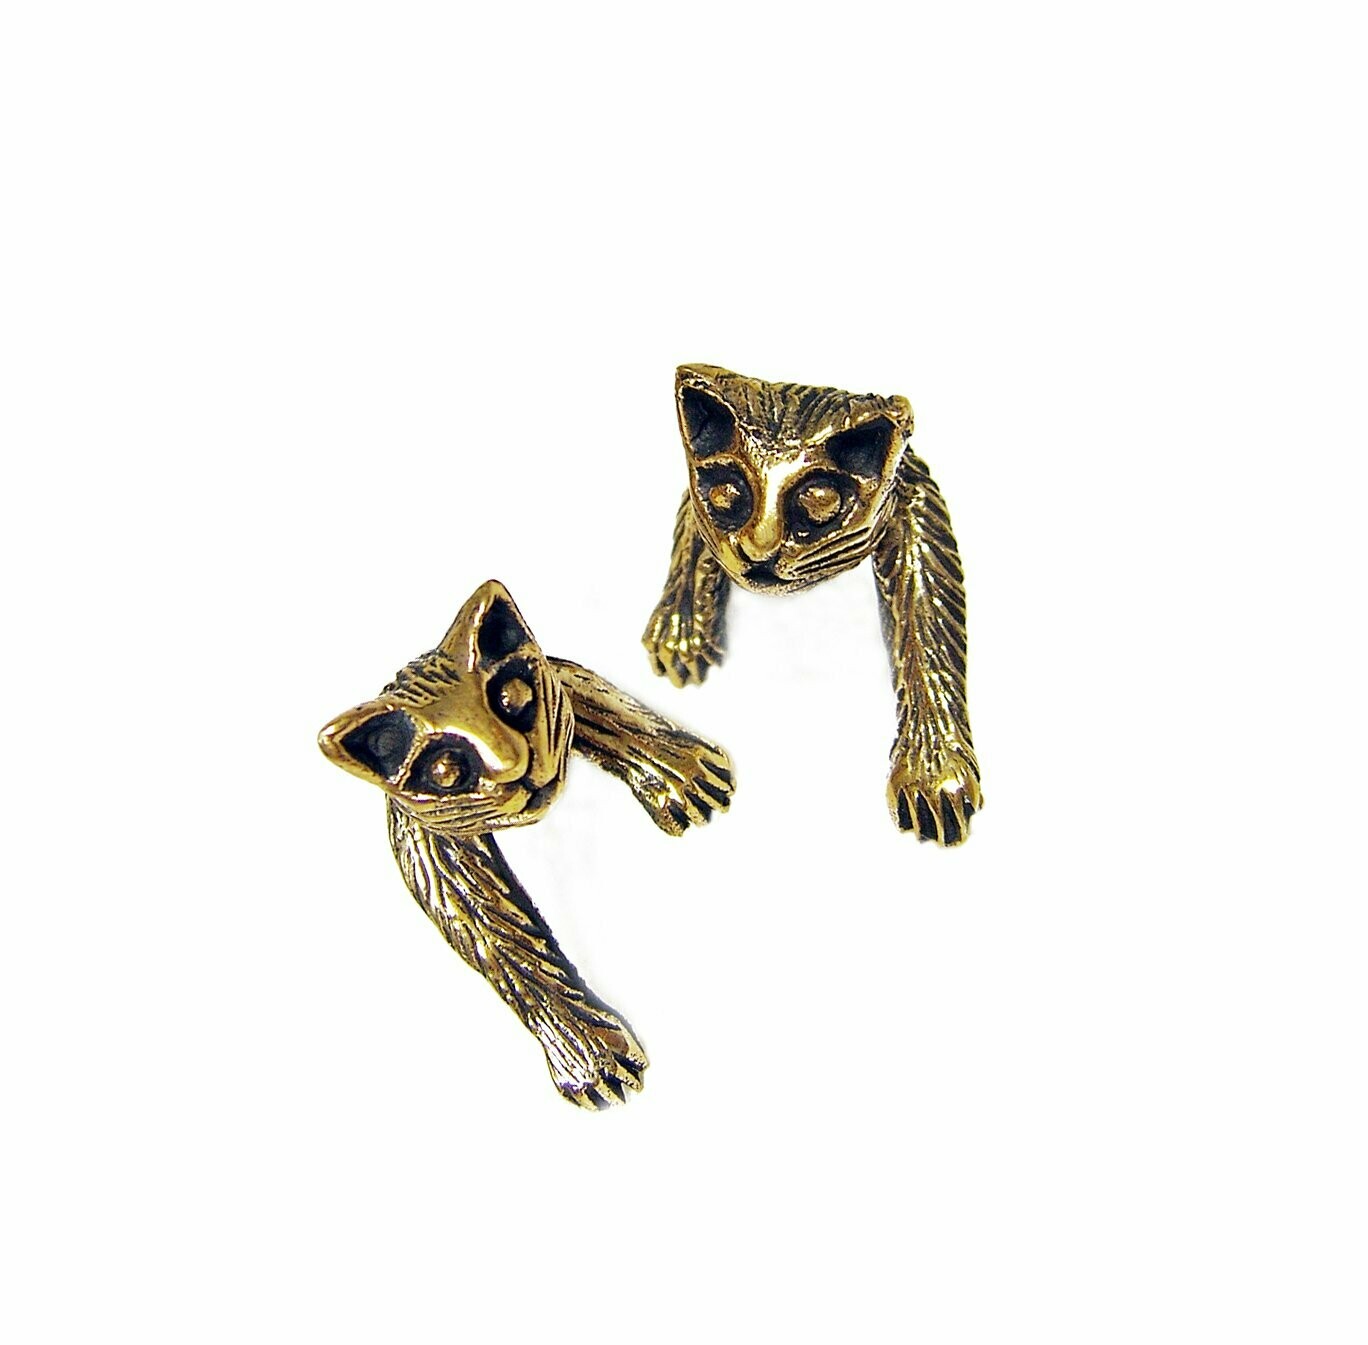 Entzückende Katzen Ohrstecker
Bronze vollplastisch